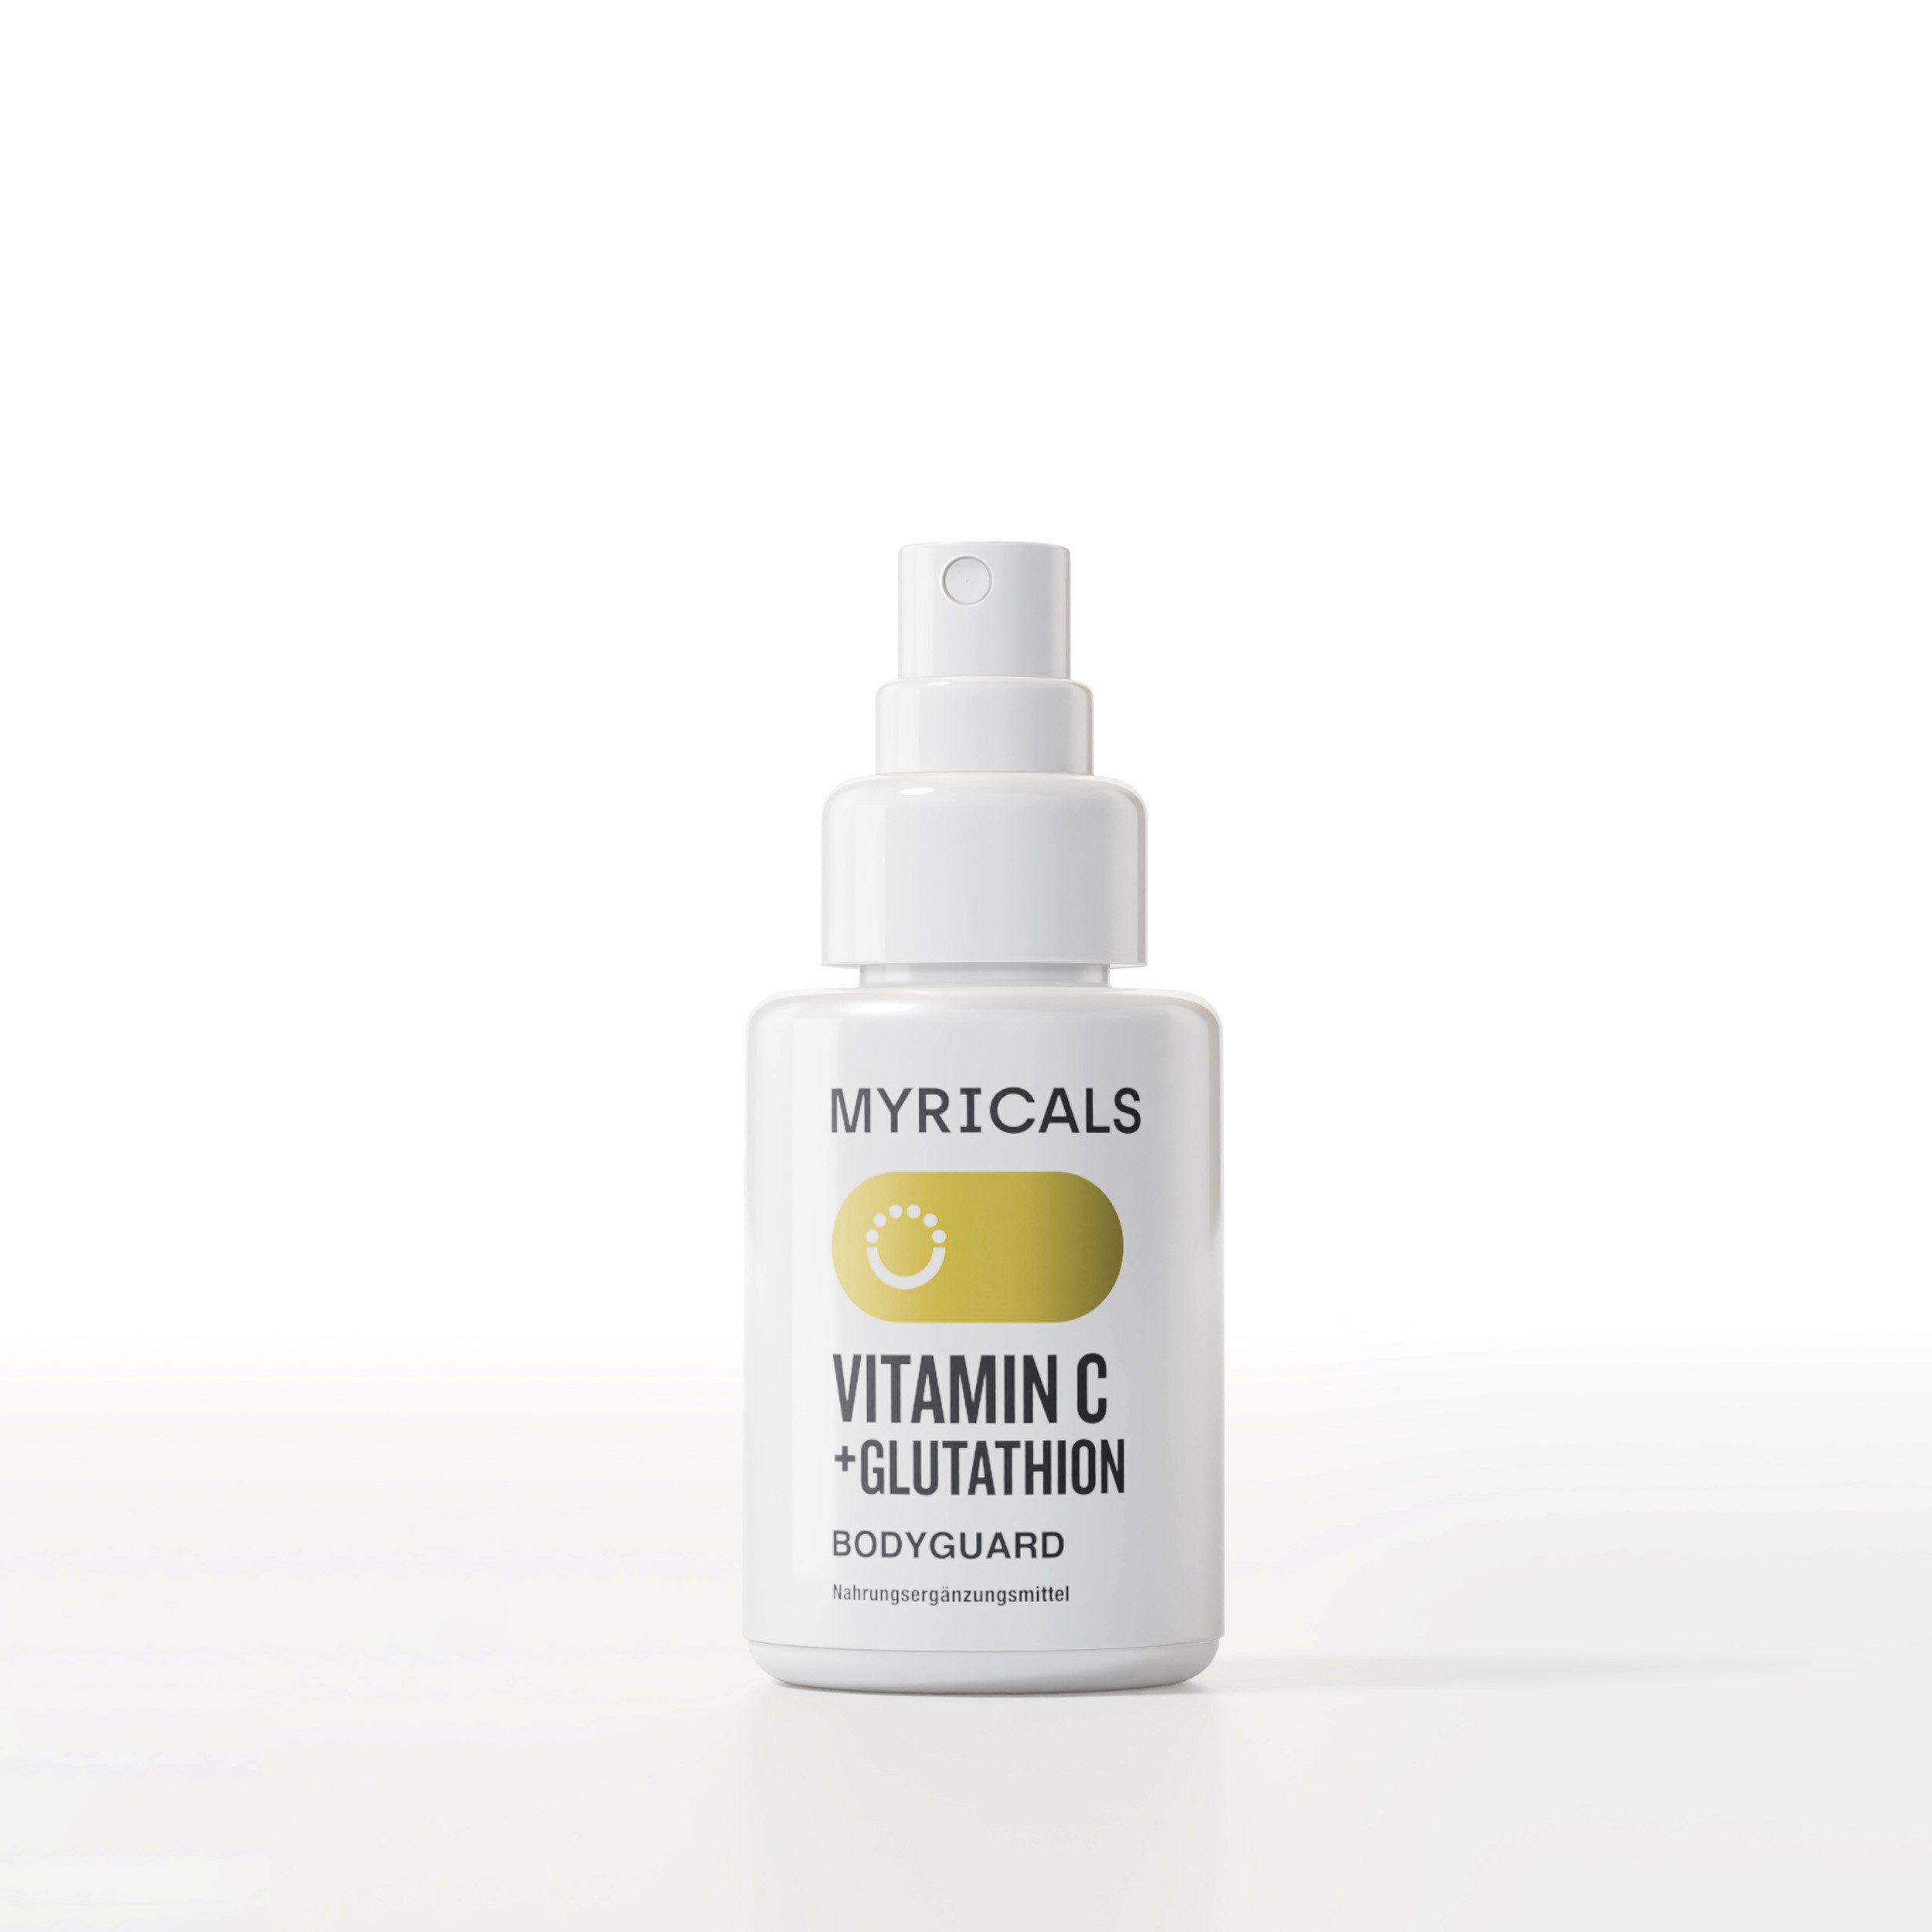 Myricals Zungenspray Bodyguard Vitamin C + Glutathion Spray